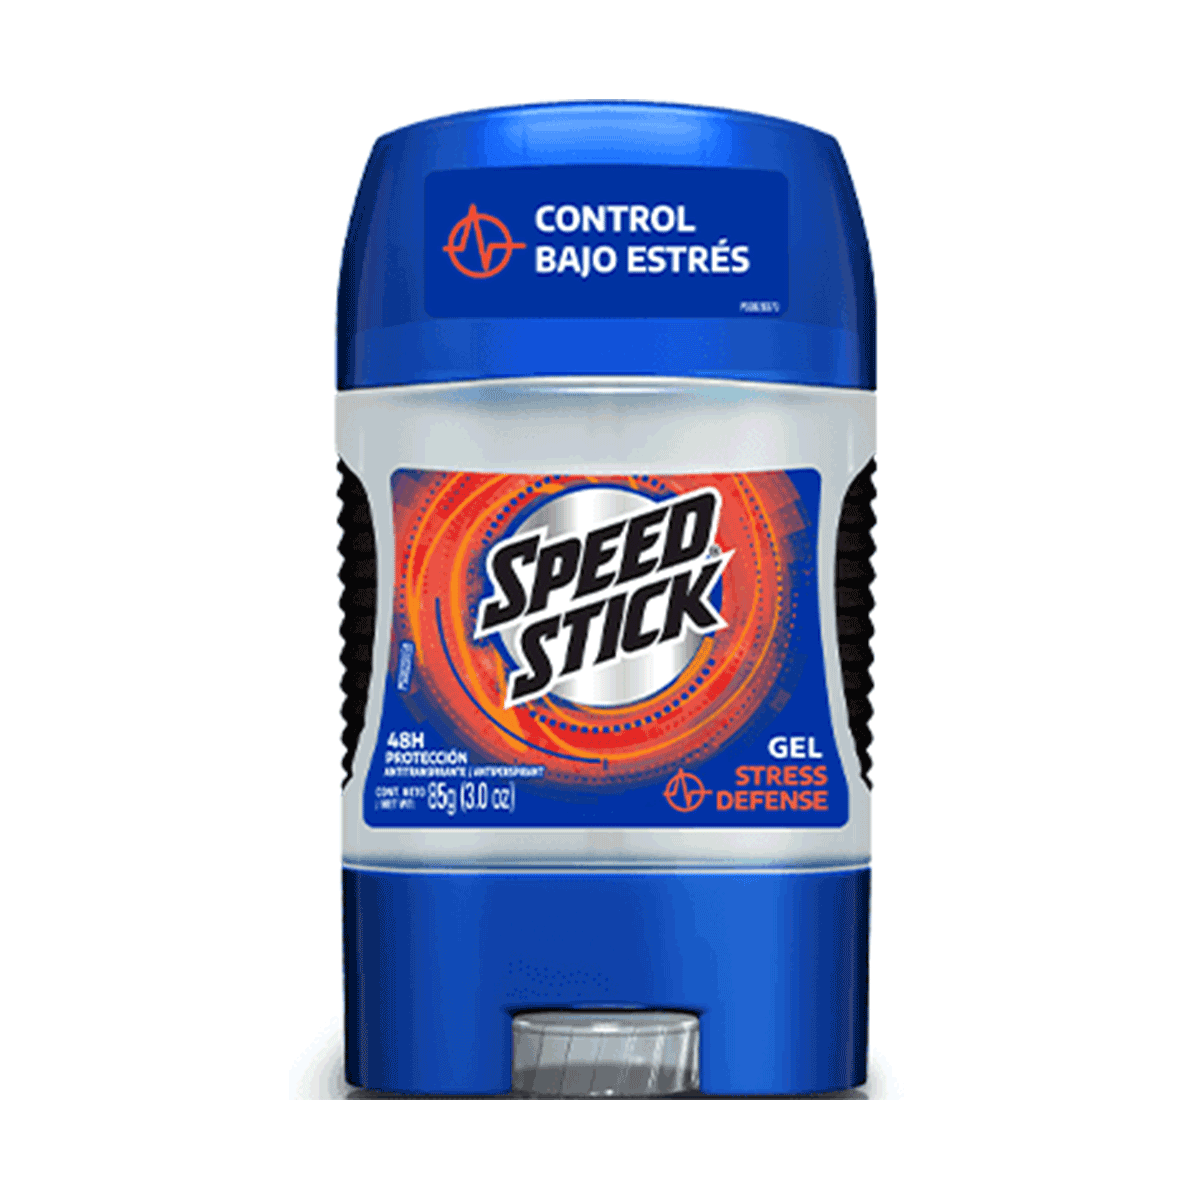 Desodorante Gel Stress Defense Speed Stick 85 gr